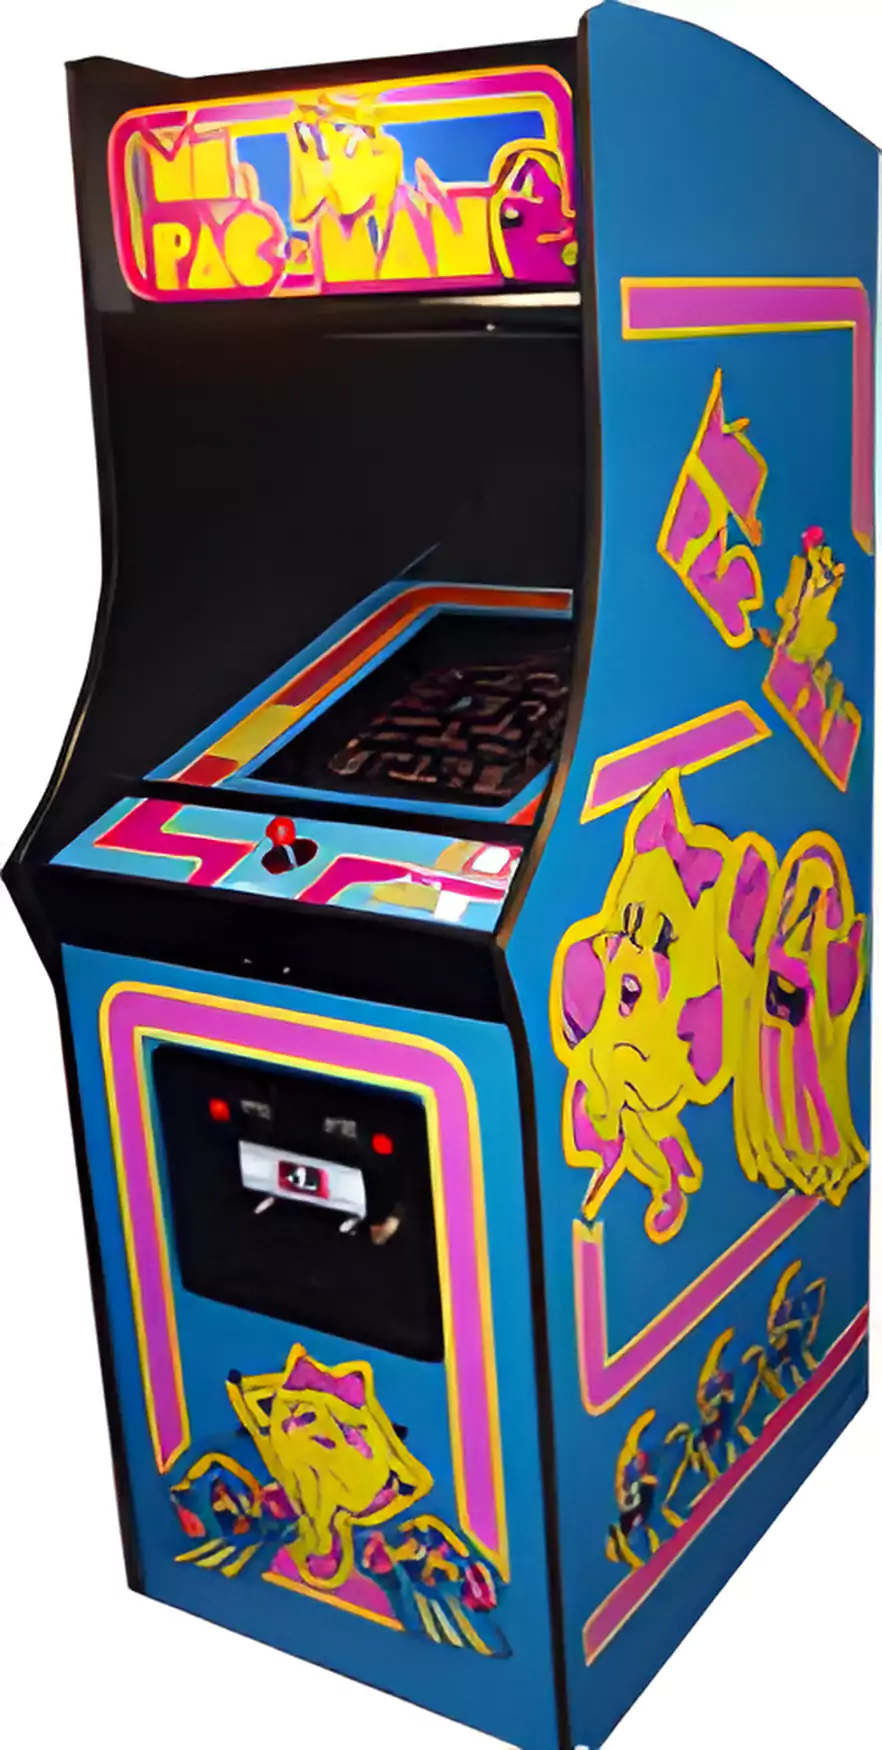 Ms Pac-Man Arcade Game